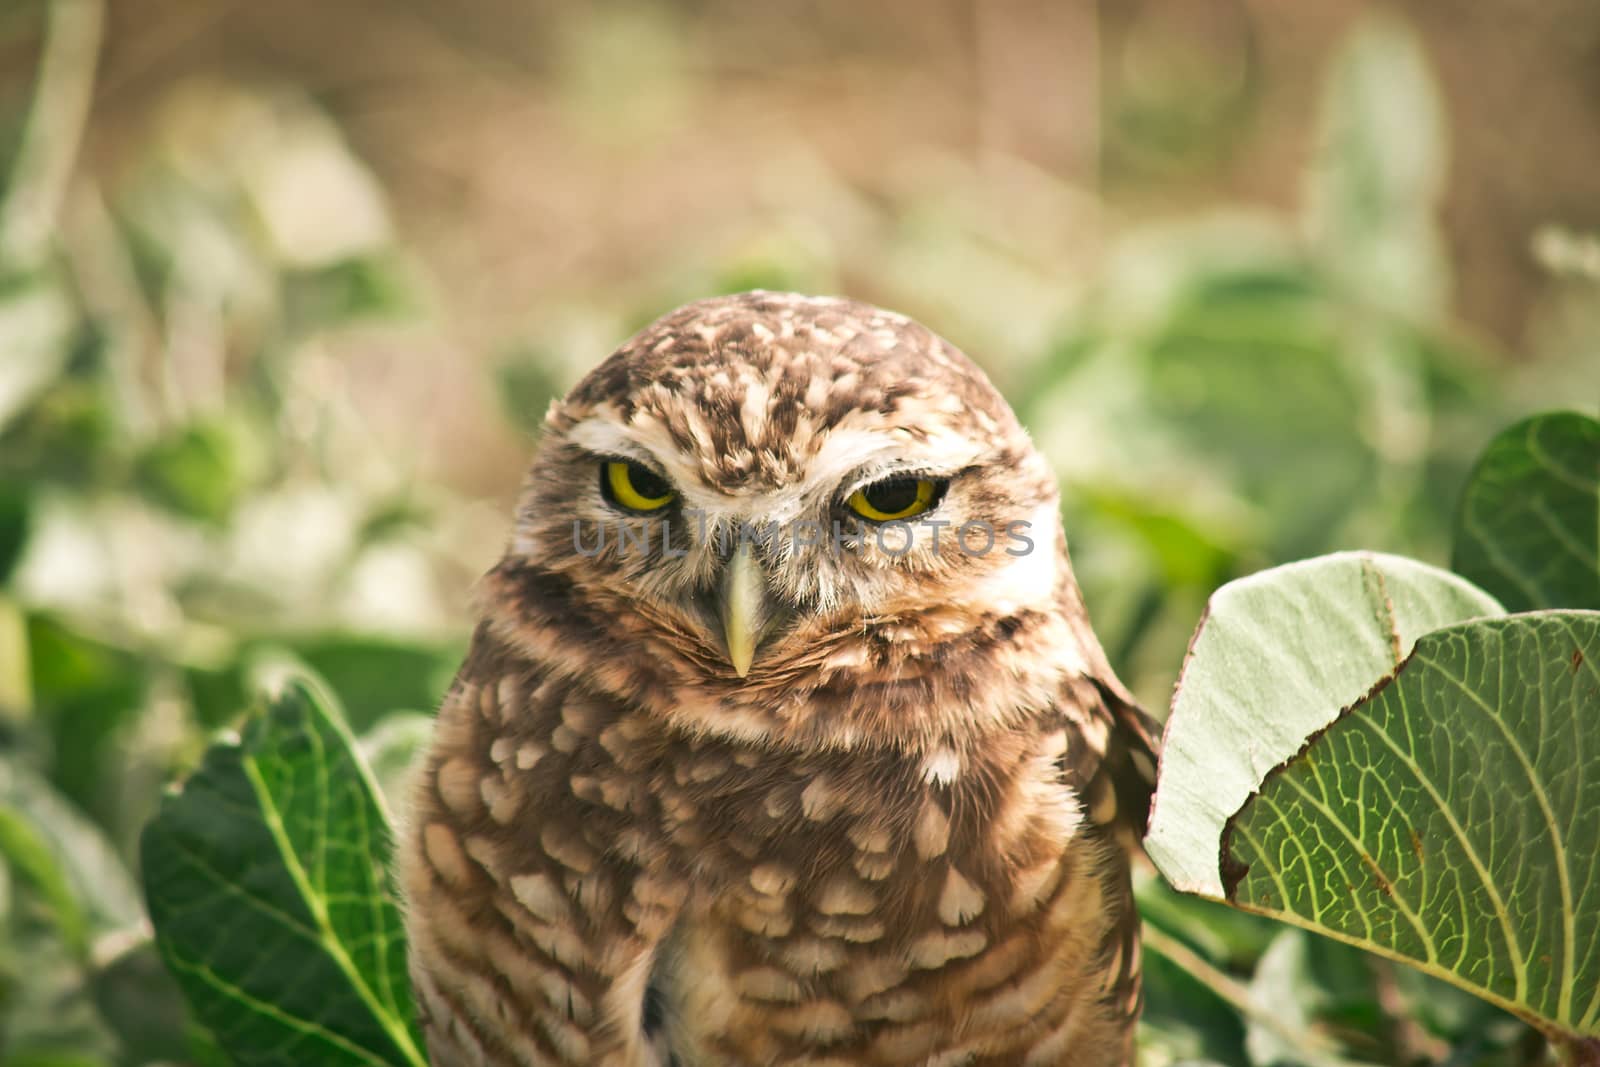 Burrowing owl by gigiobbr